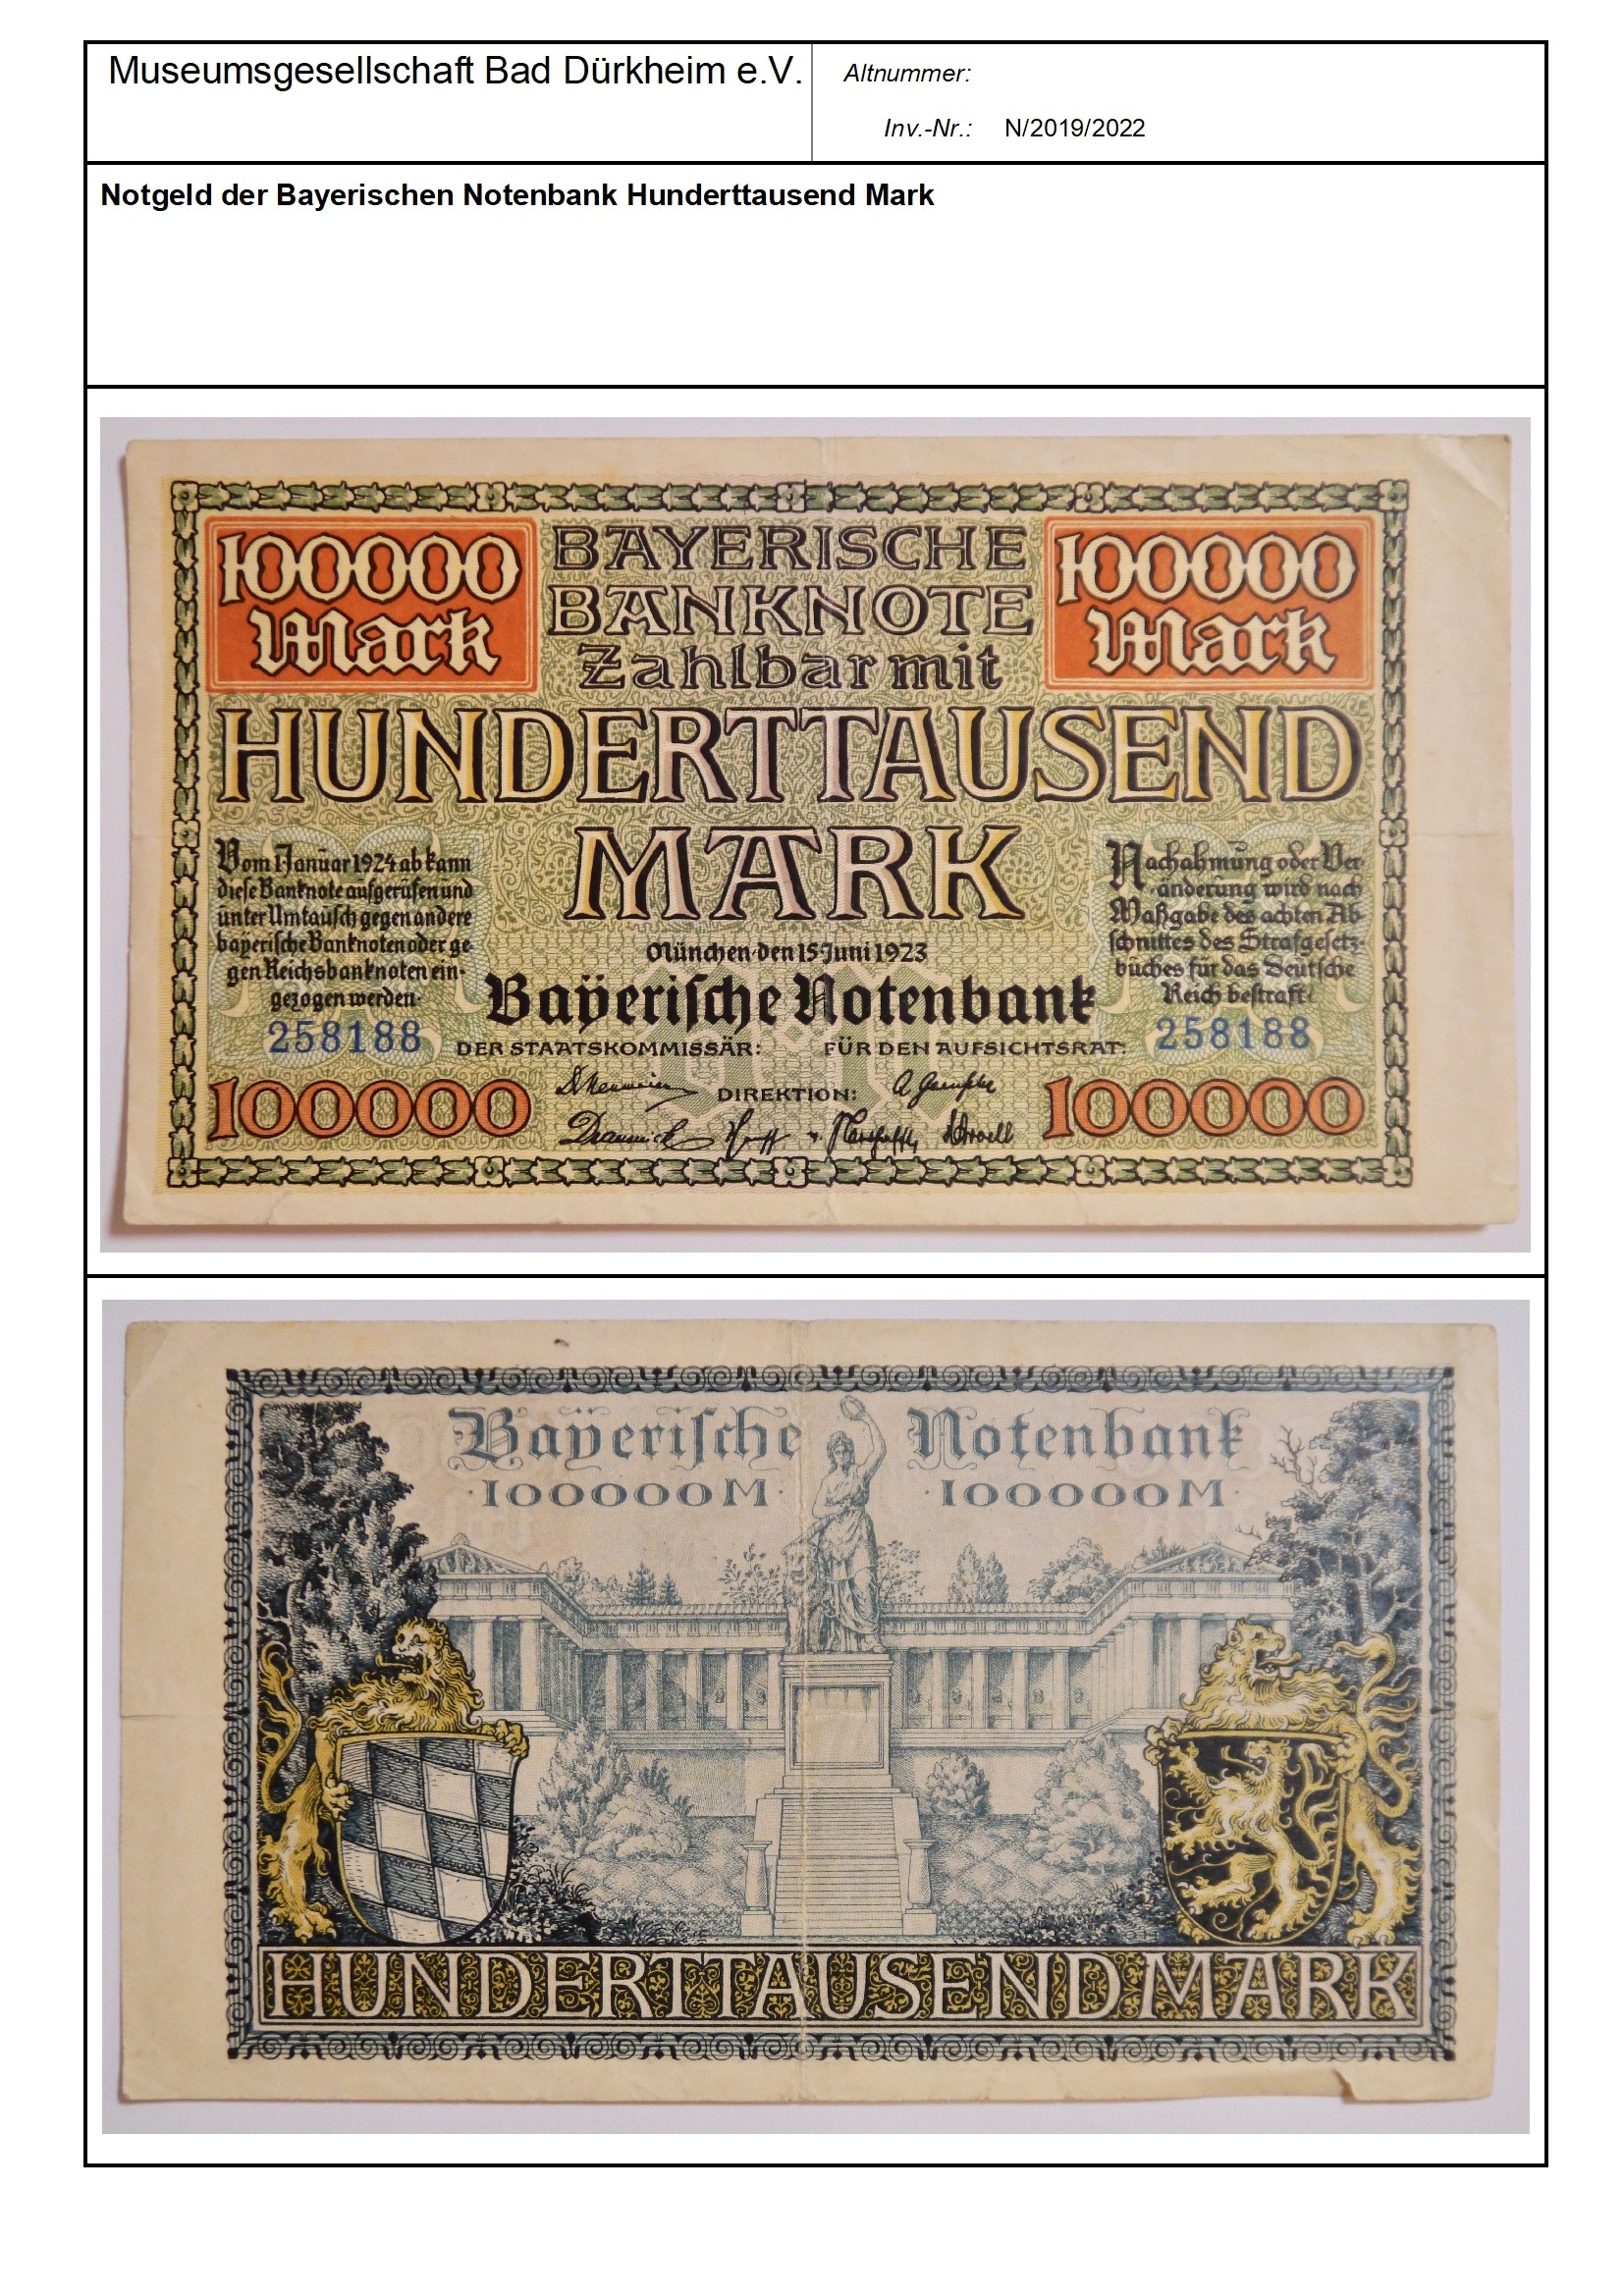 Notgeld der Bayerischen Notenbank Hunderttausend Mark
Serien-Nummer: 258188 (Museumsgesellschaft Bad Dürkheim e.V. CC BY-NC-SA)